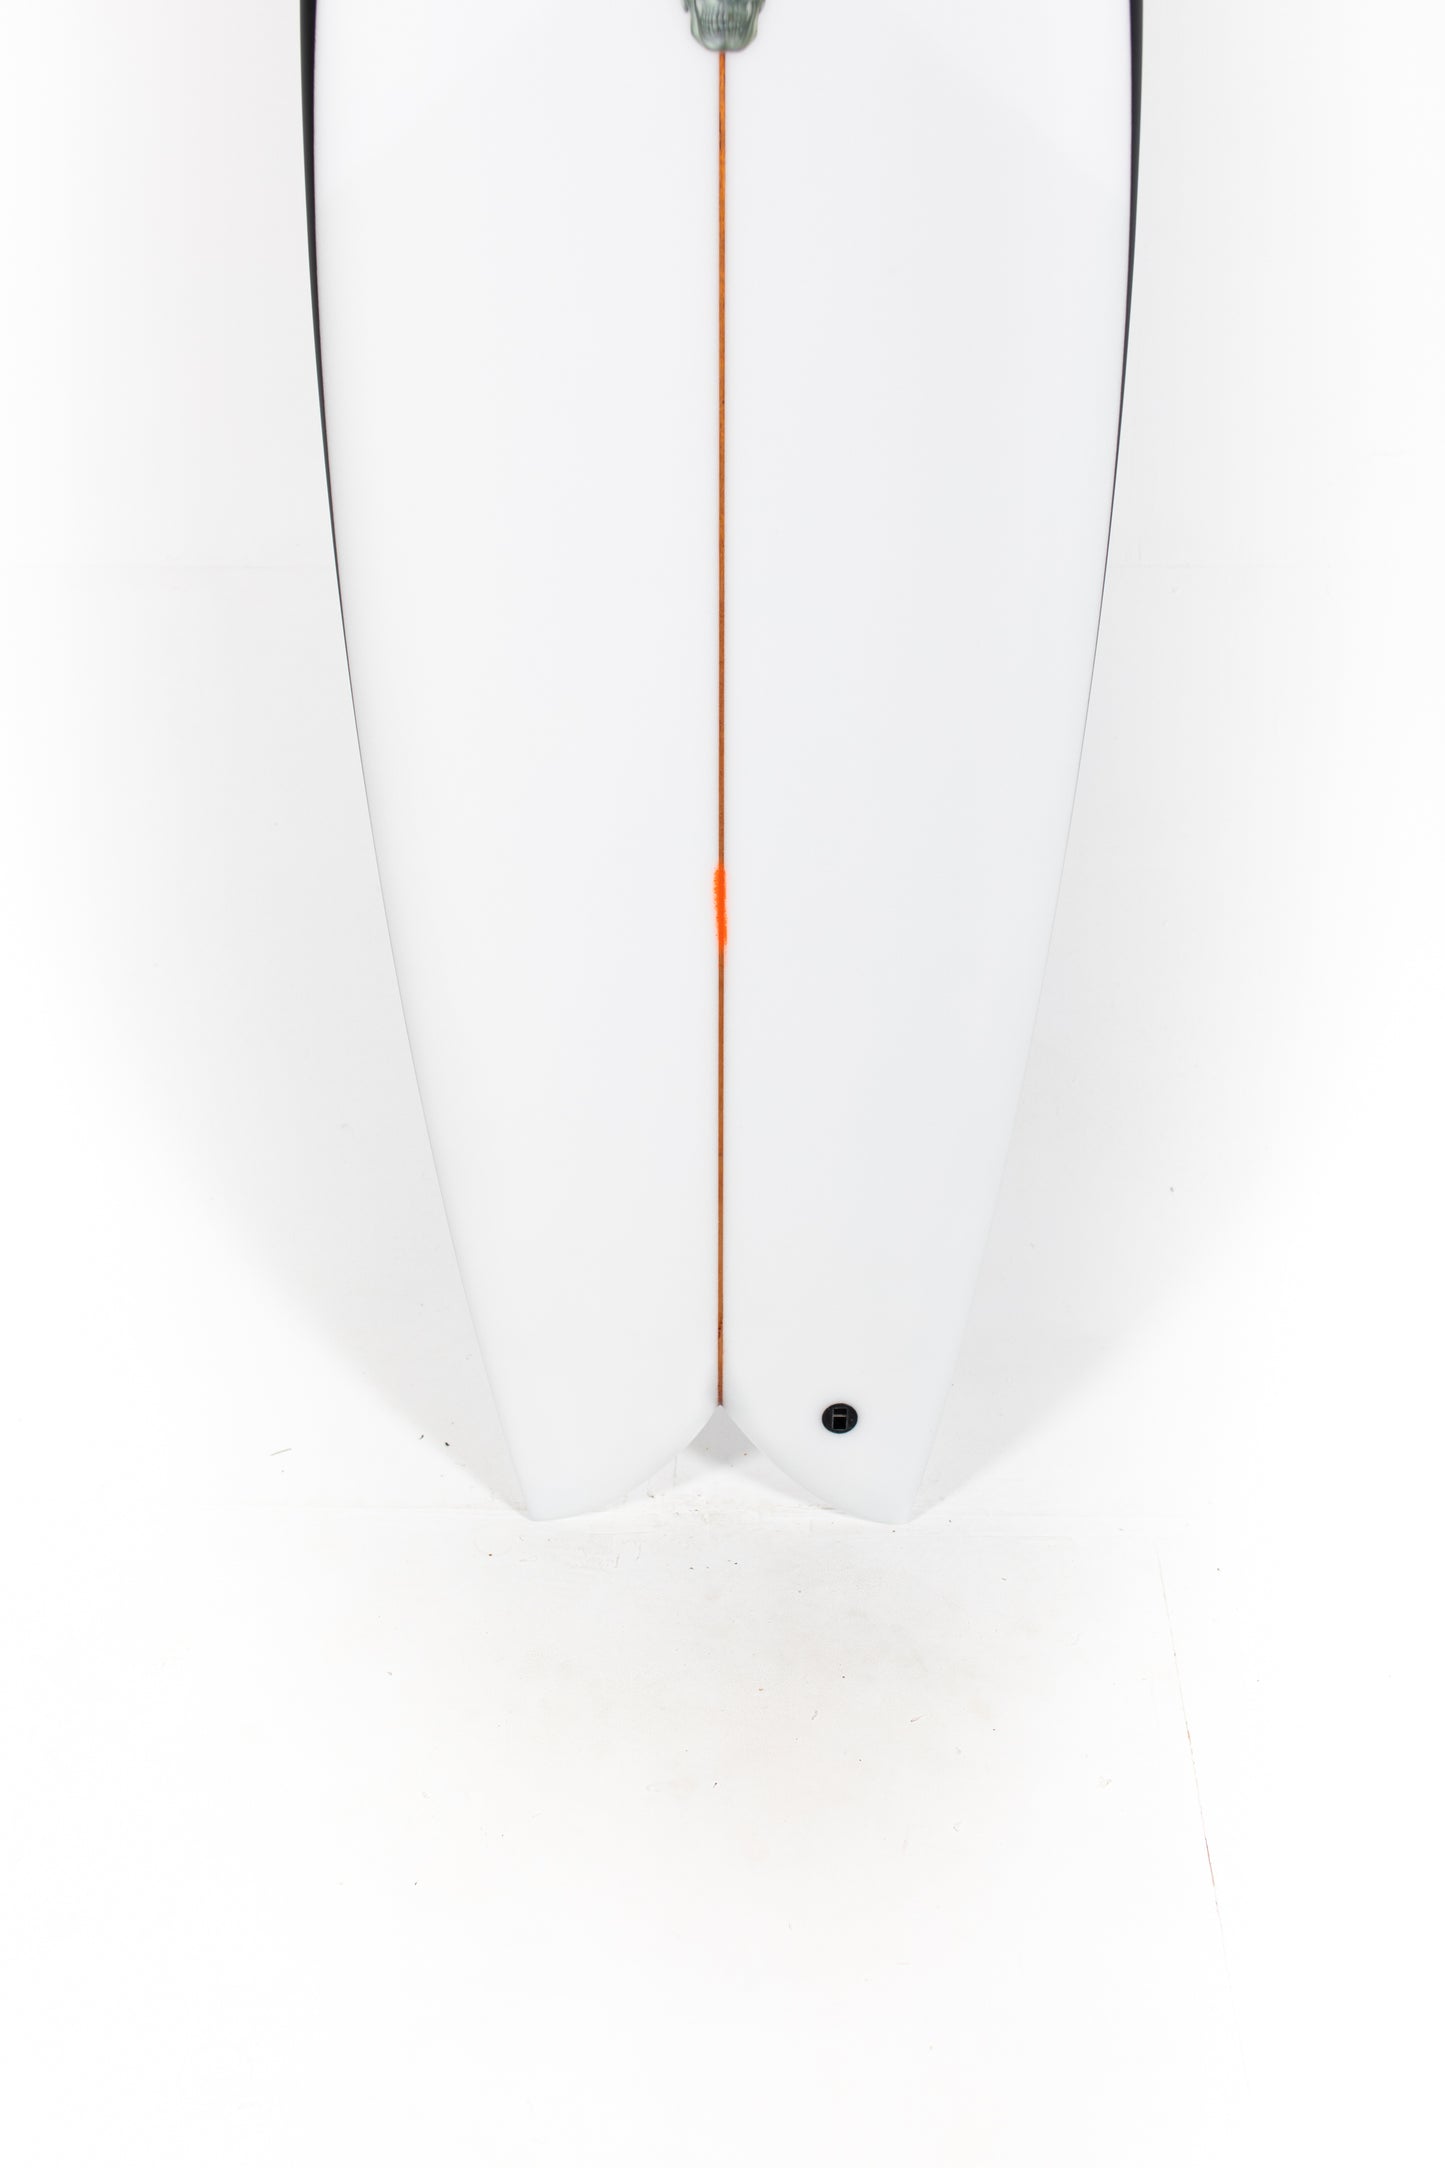 
                  
                    Pukas Surf Shop - Christenson Surfboards - MYCONAUT - 5'7" x 20 3/4 x 2 1/2 - CX04350
                  
                